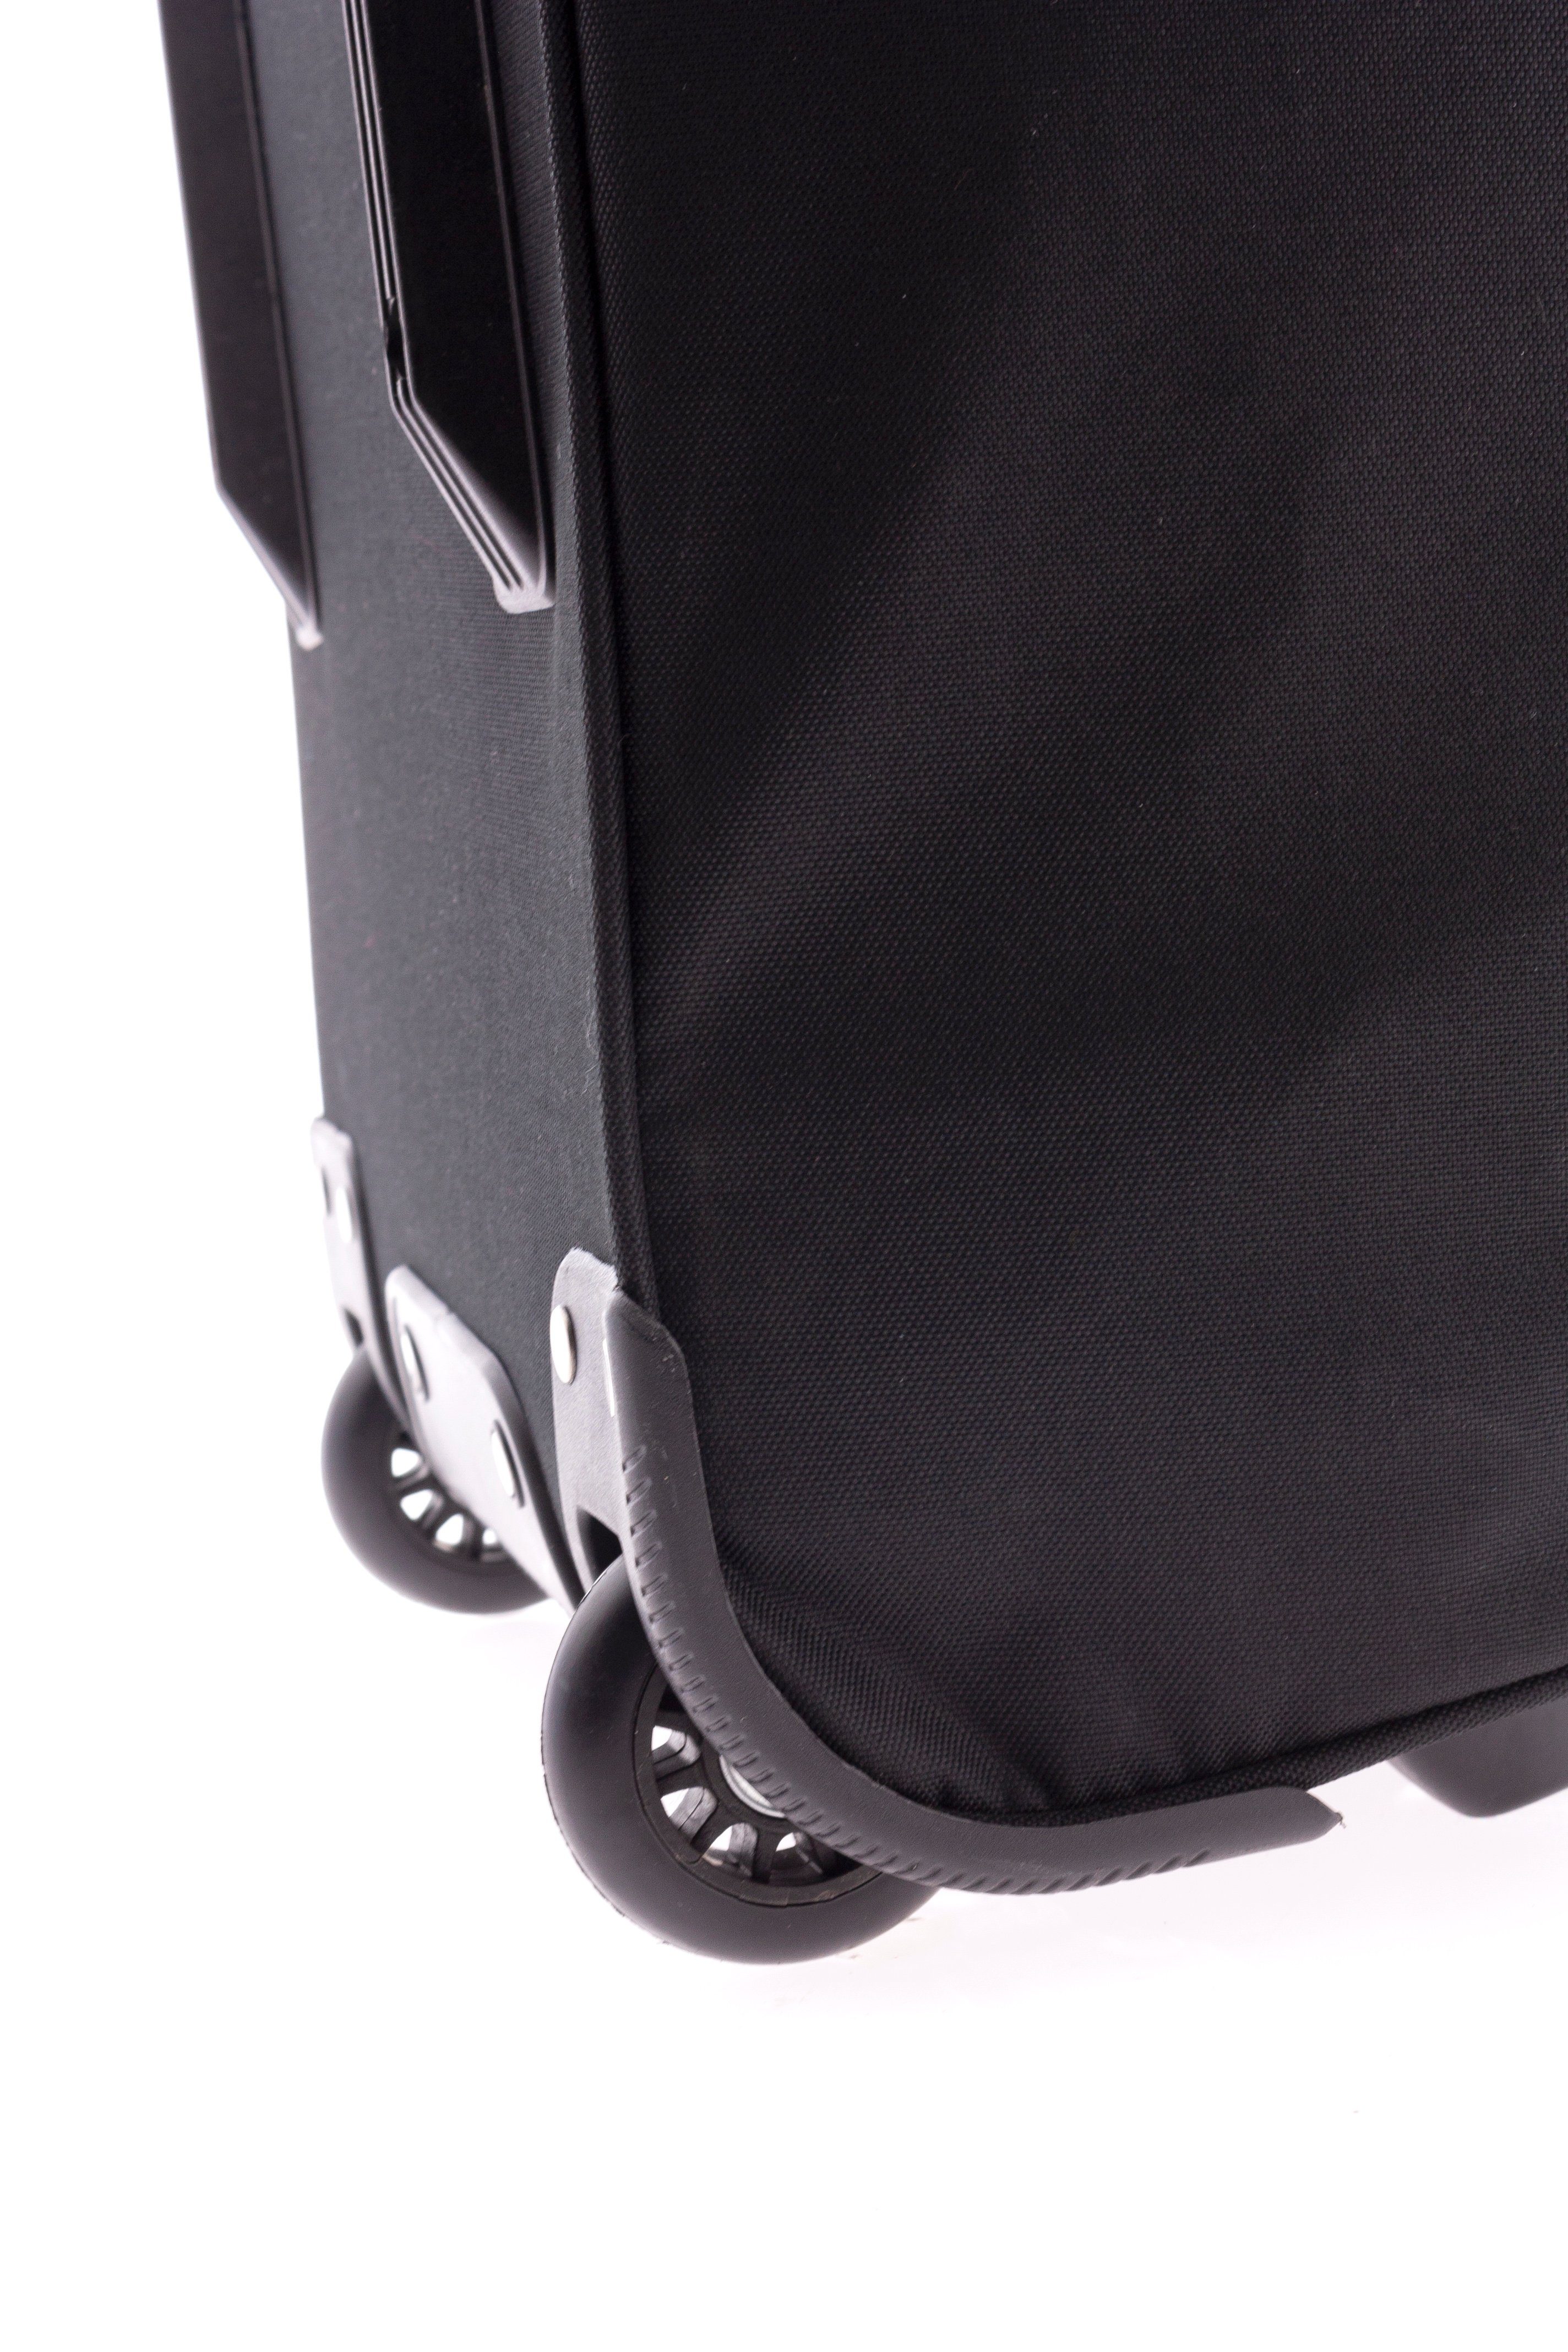 Trolleytasche, - Trolley-Reisetasche schwarz, Gewicht: - - Rollentasche, rot mit kg, 2,4 Reisetasche GLADIATOR Sporttasche blau cm - 72 Rollen od. 76Liter